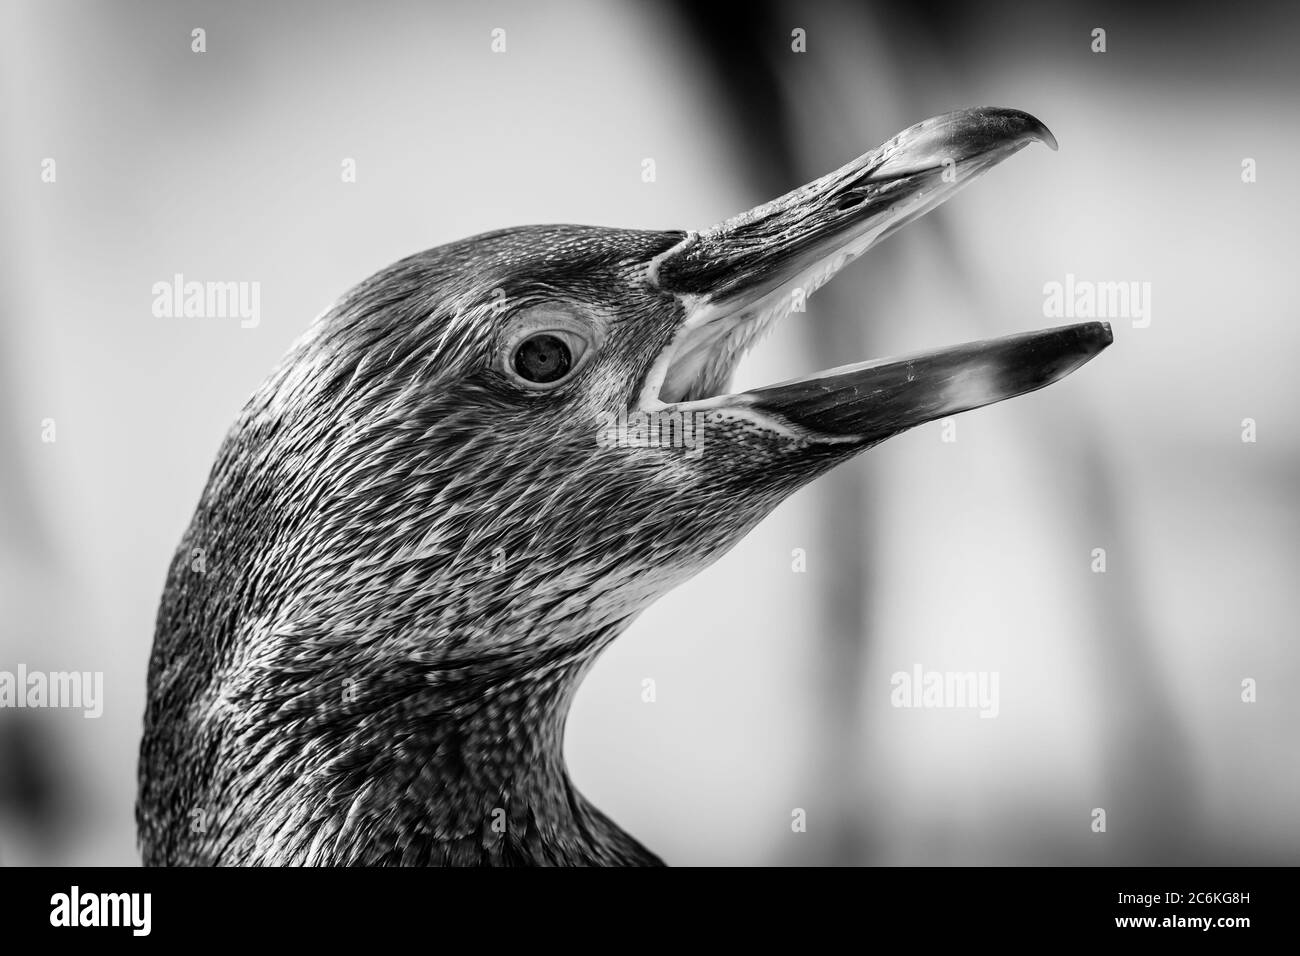 Monochrome, seitliche Nahaufnahme eines südamerikanischen Humboldt-Pinguins (Spheniscus humboldti), der mit weit geöffnetem Schnabel quiegt und im Inneren Details des Mundes zeigt. Stockfoto